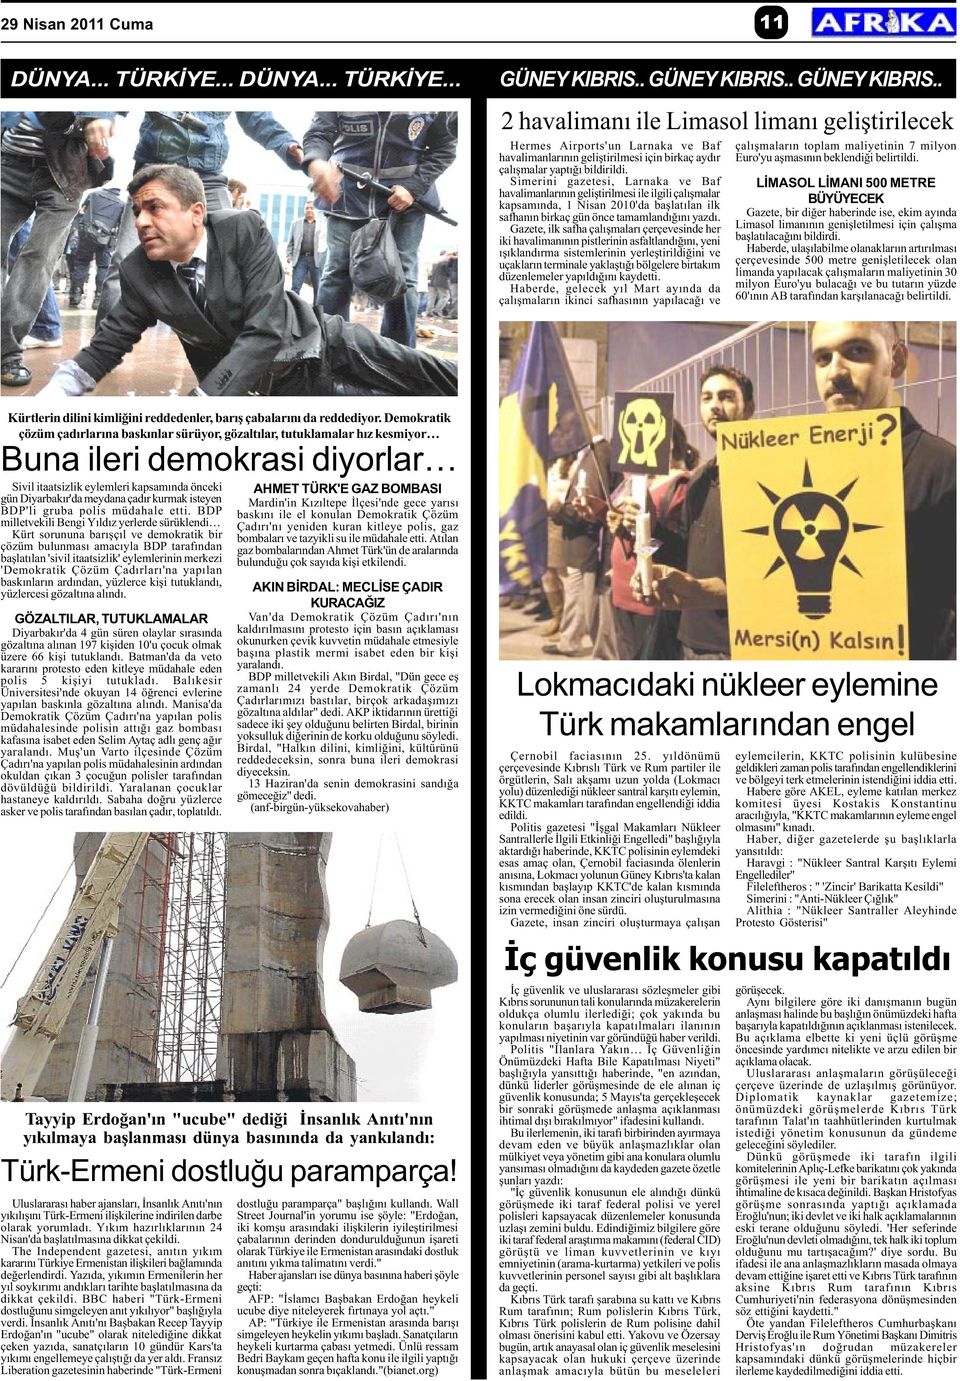 Simerini gazetesi, Larnaka ve Baf havalimanlarýnýn geliþtirilmesi ile ilgili çalýþmalar kapsamýnda, 1 Nisan 2010'da baþlatýlan ilk safhanýn birkaç gün önce tamamlandýðýný yazdý.